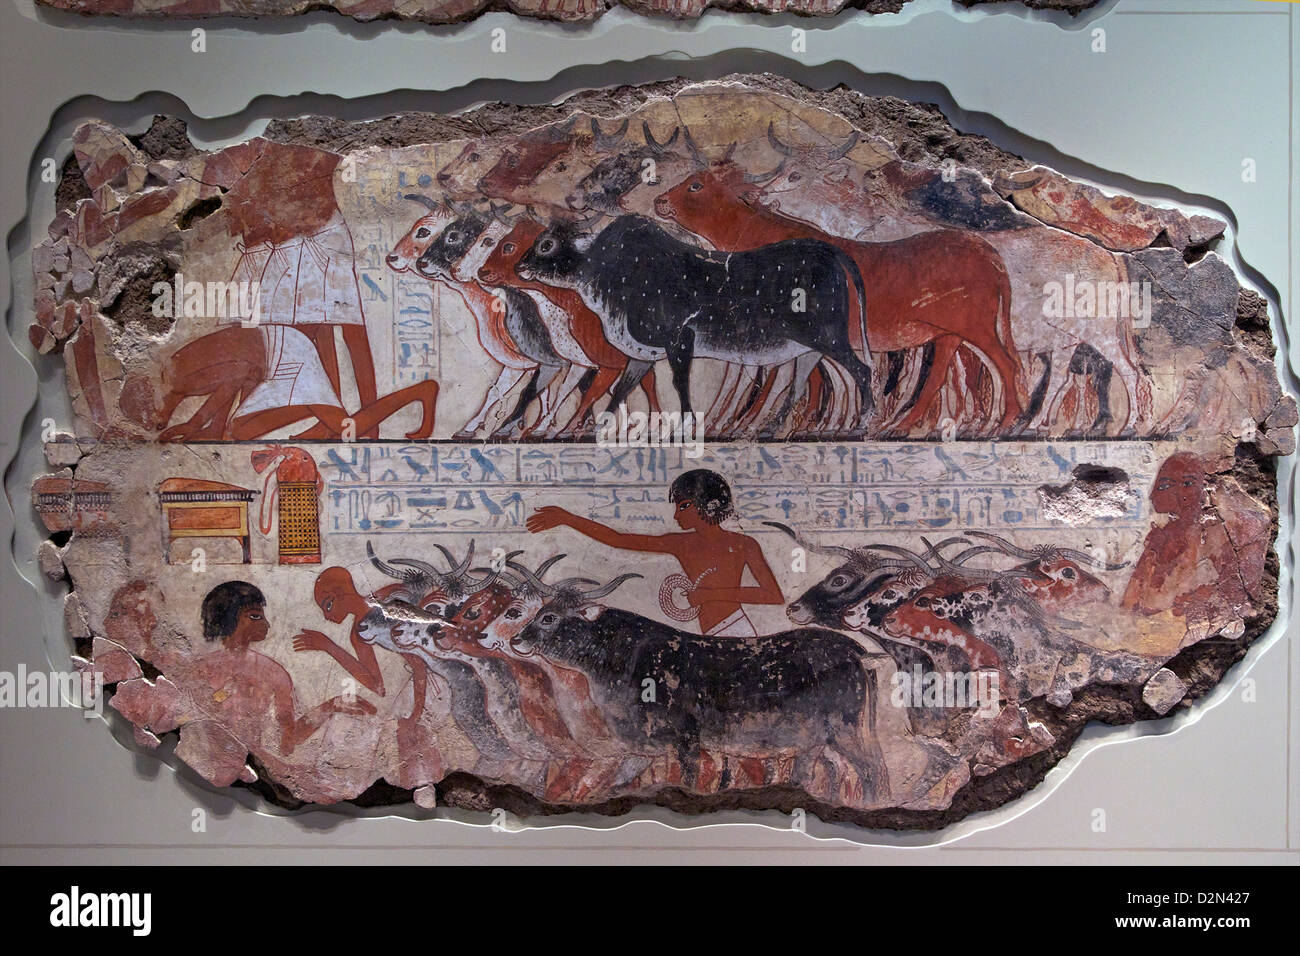 Su visualización Nebamun gansos y ganado, Templo de Amun, Tebas, Egipto, Museo Británico, Londres, Inglaterra, Reino Unido, GB, Islas Británicas Foto de stock